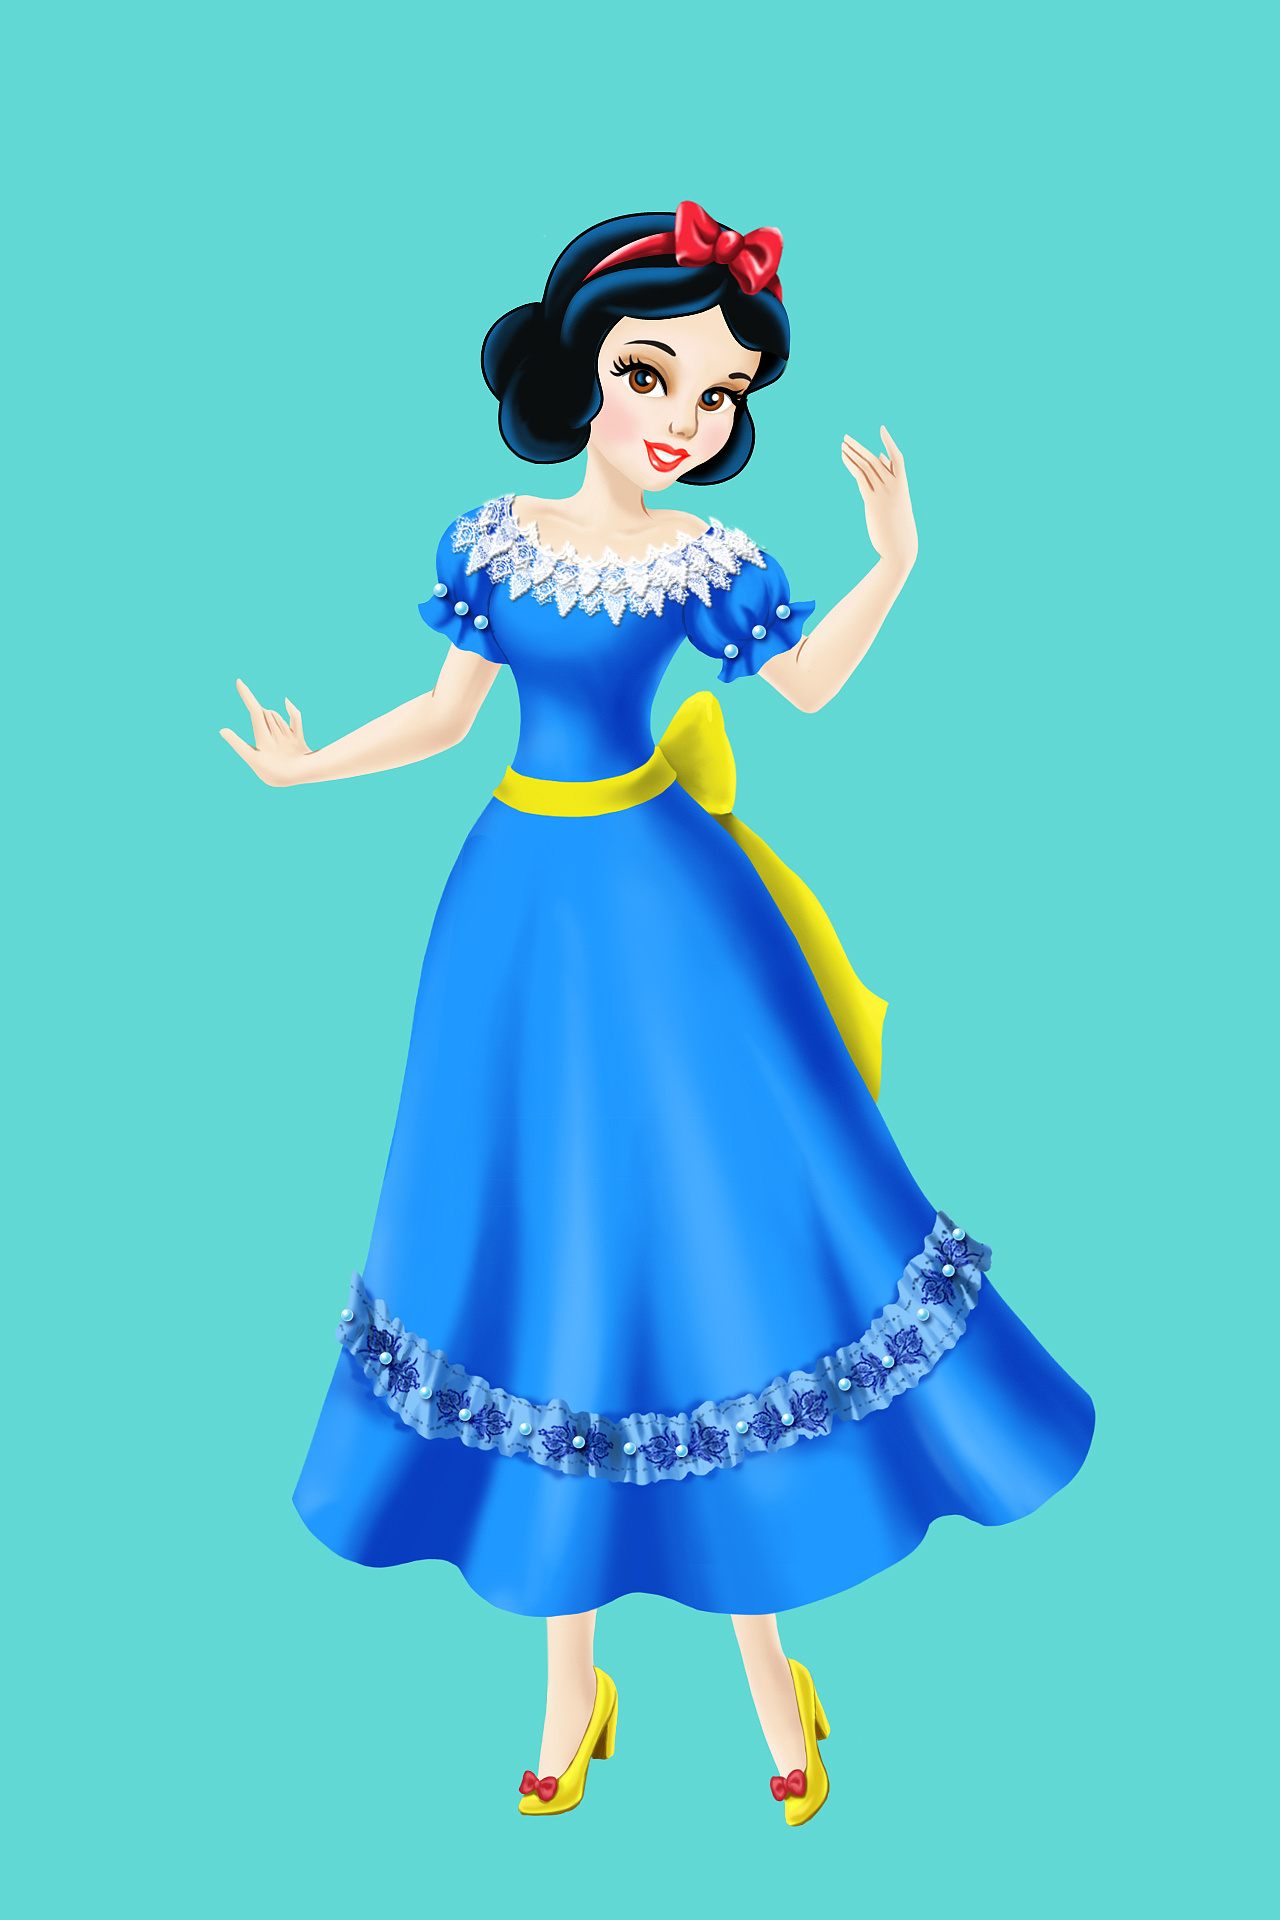 迪士尼公主—白雪公主 - 堆糖，美图壁纸兴趣社区